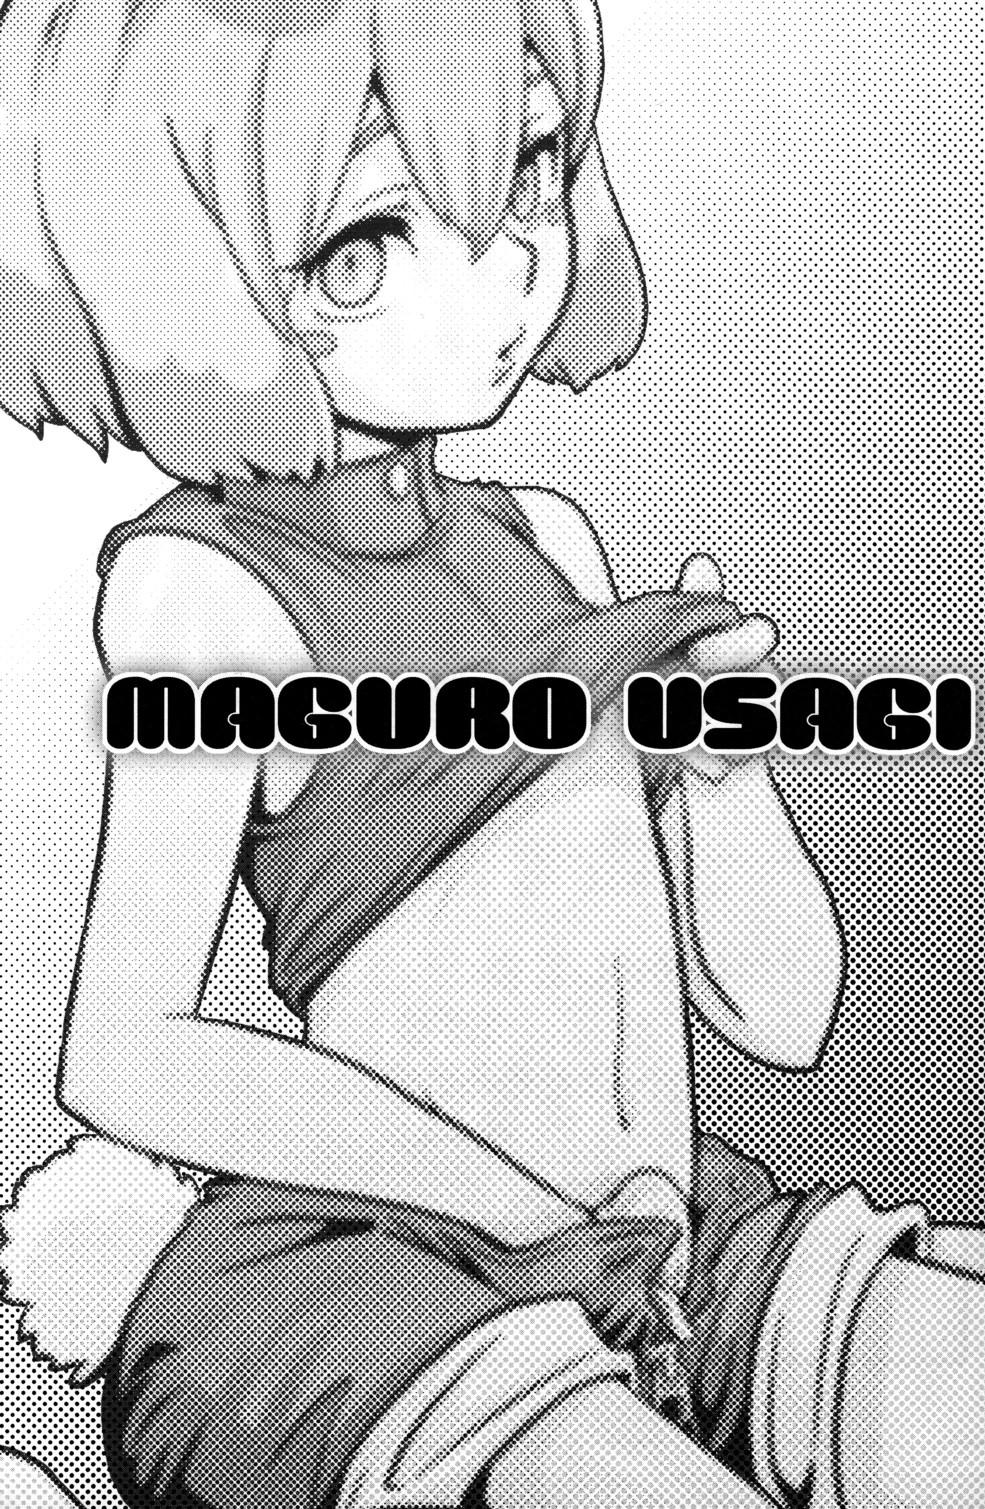 Maguro Usagi Volume 1 2